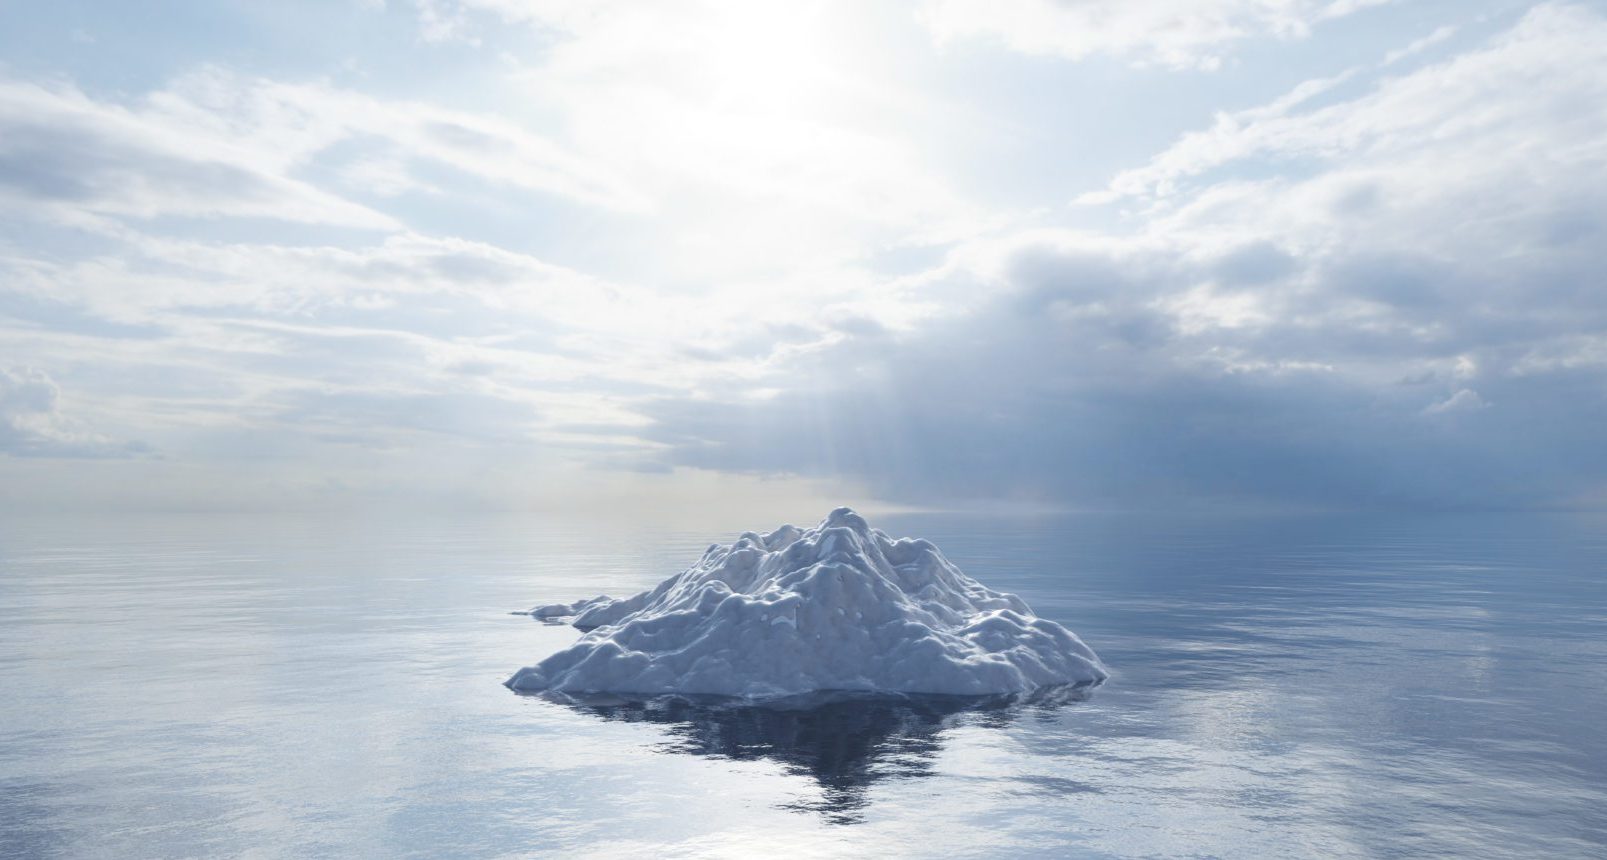 Iceberg derretendo no oceano. Aquecimento global e mudanças climáticas